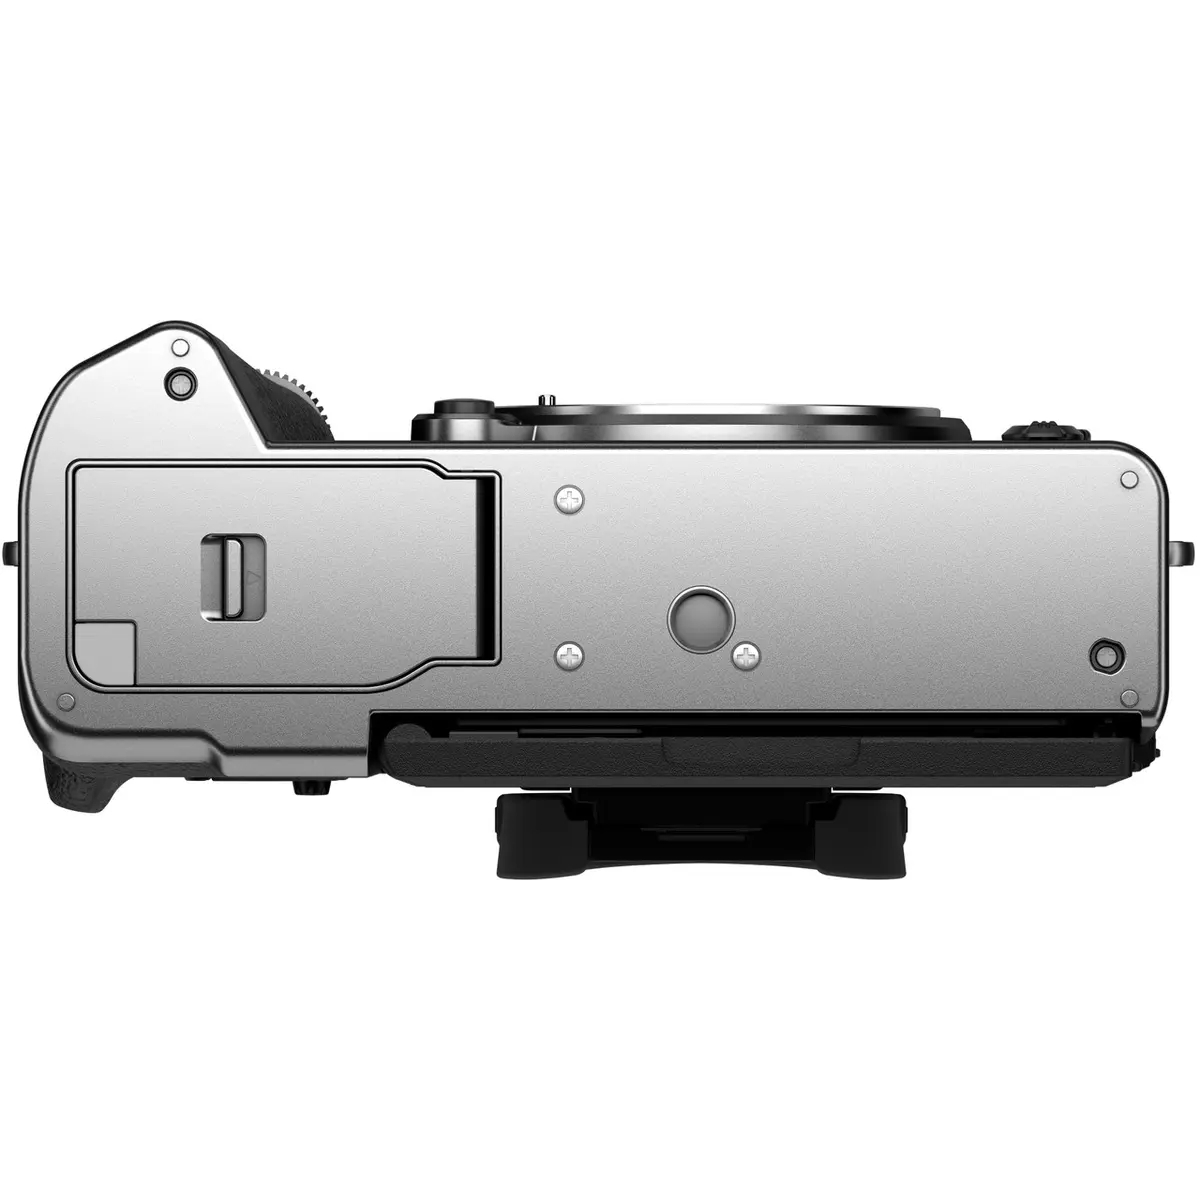 3. Fujifilm X-T5 Kit (18-55) Silver